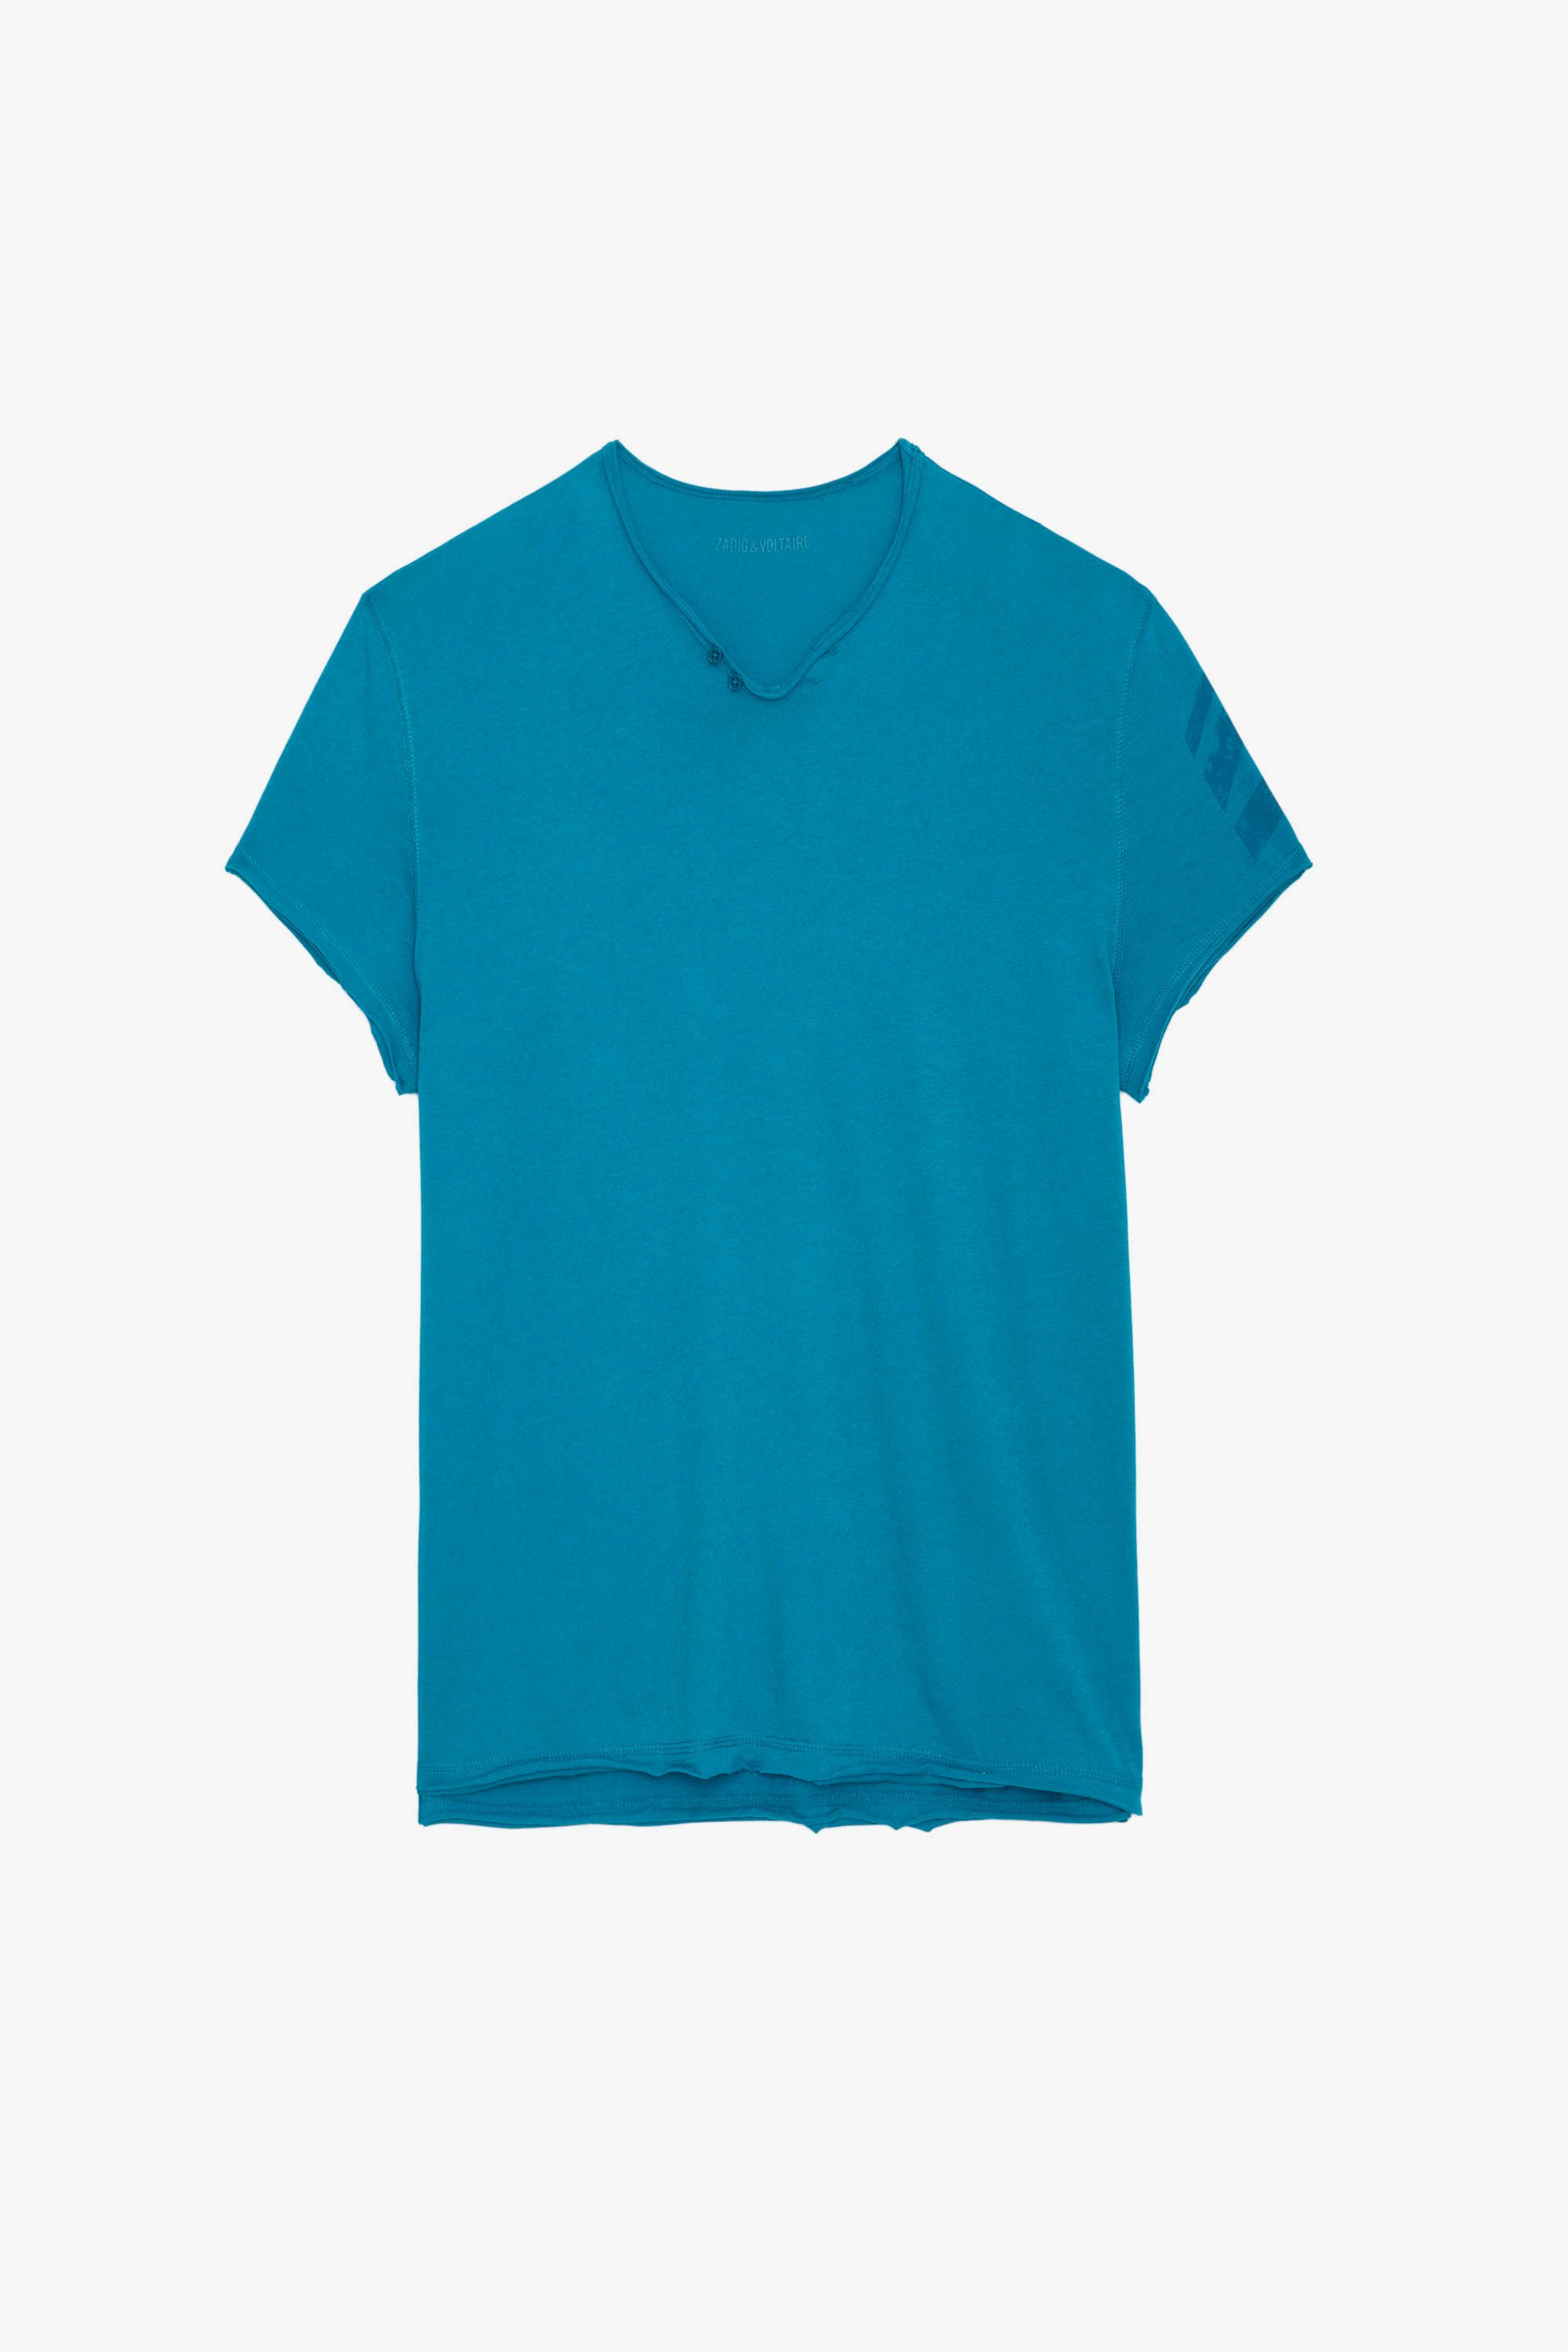 Camiseta Tunecina Monastir Flecha - Camiseta azul cerceta de algodón con cuello tunecino con mangas cortas y flechas en la manga izquierda.